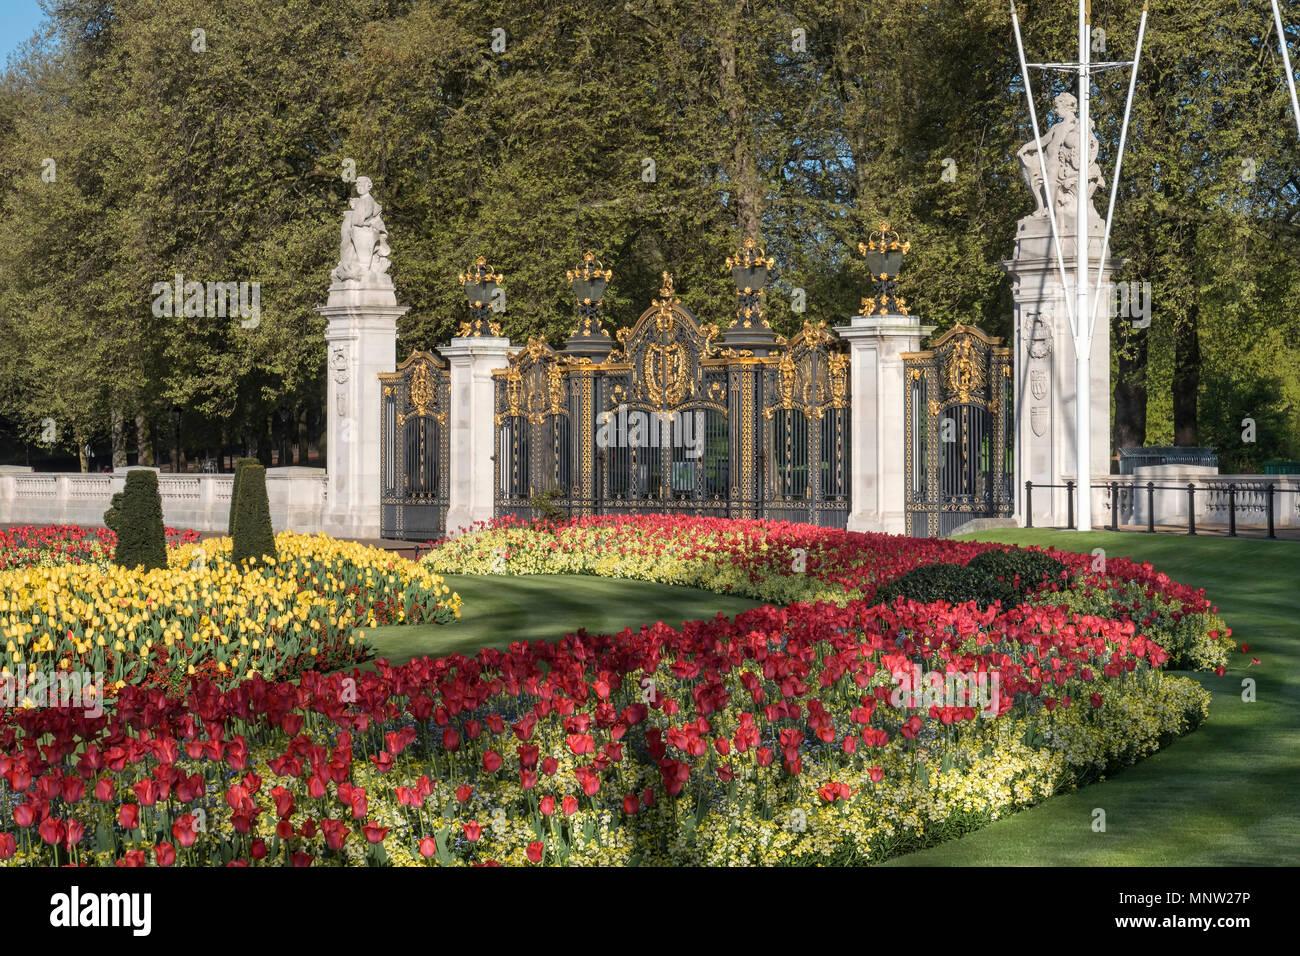 Canada Gate à l'entrée de Green Park au printemps, Buckingham Palace, London, England, UK Banque D'Images